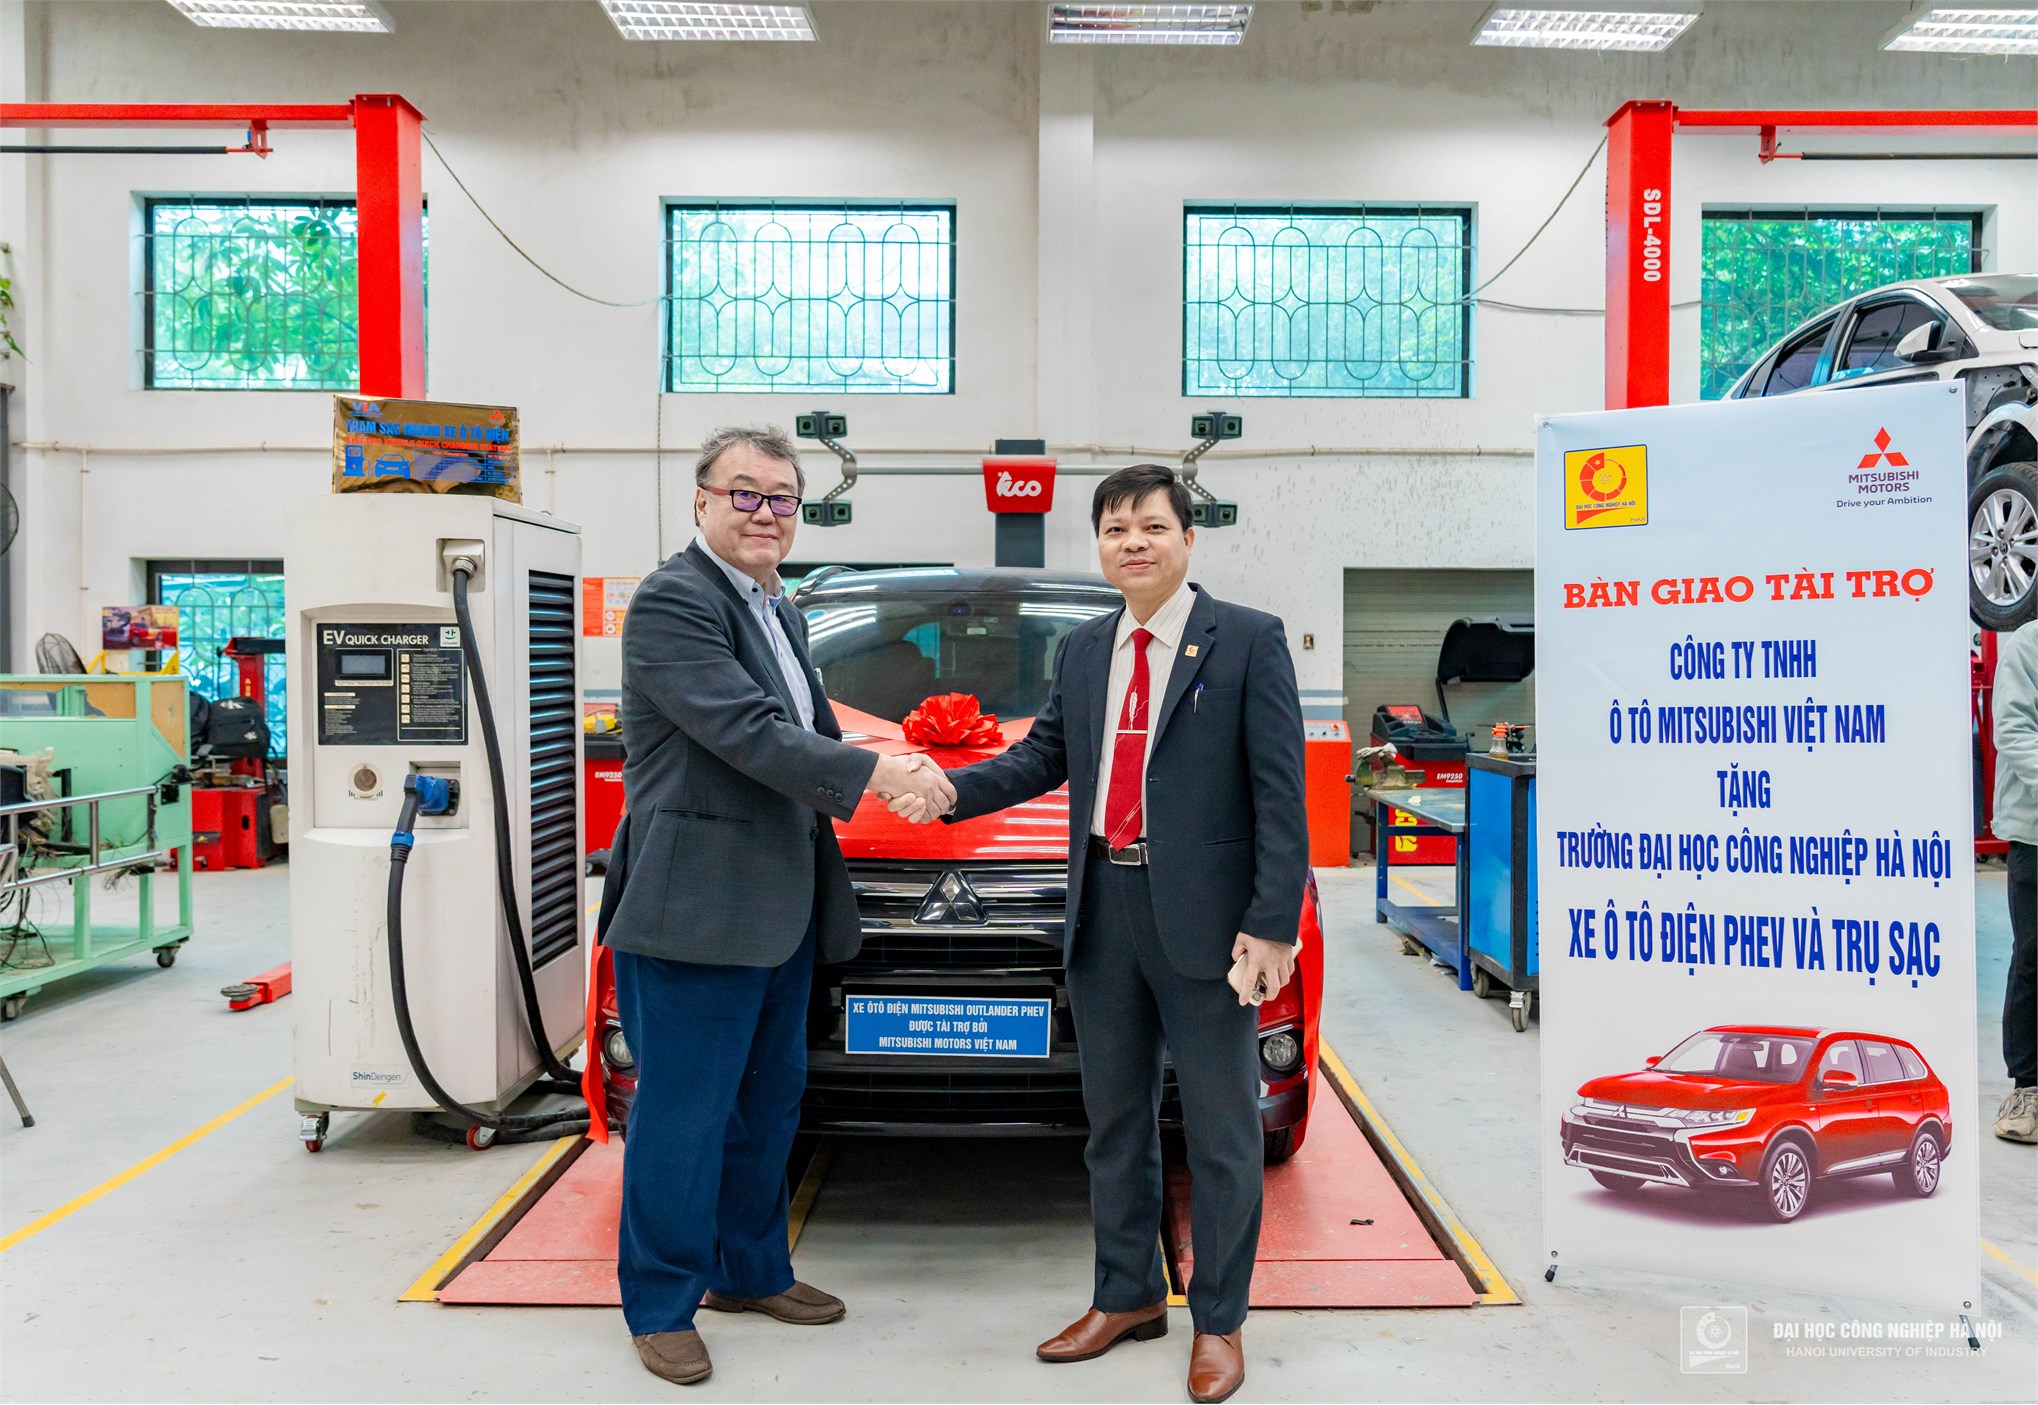 HaUI nhận bàn giao xe ô tô điện Mitsubishi Outlander PHEV và trụ sạc từ Mitsubishi Việt Nam